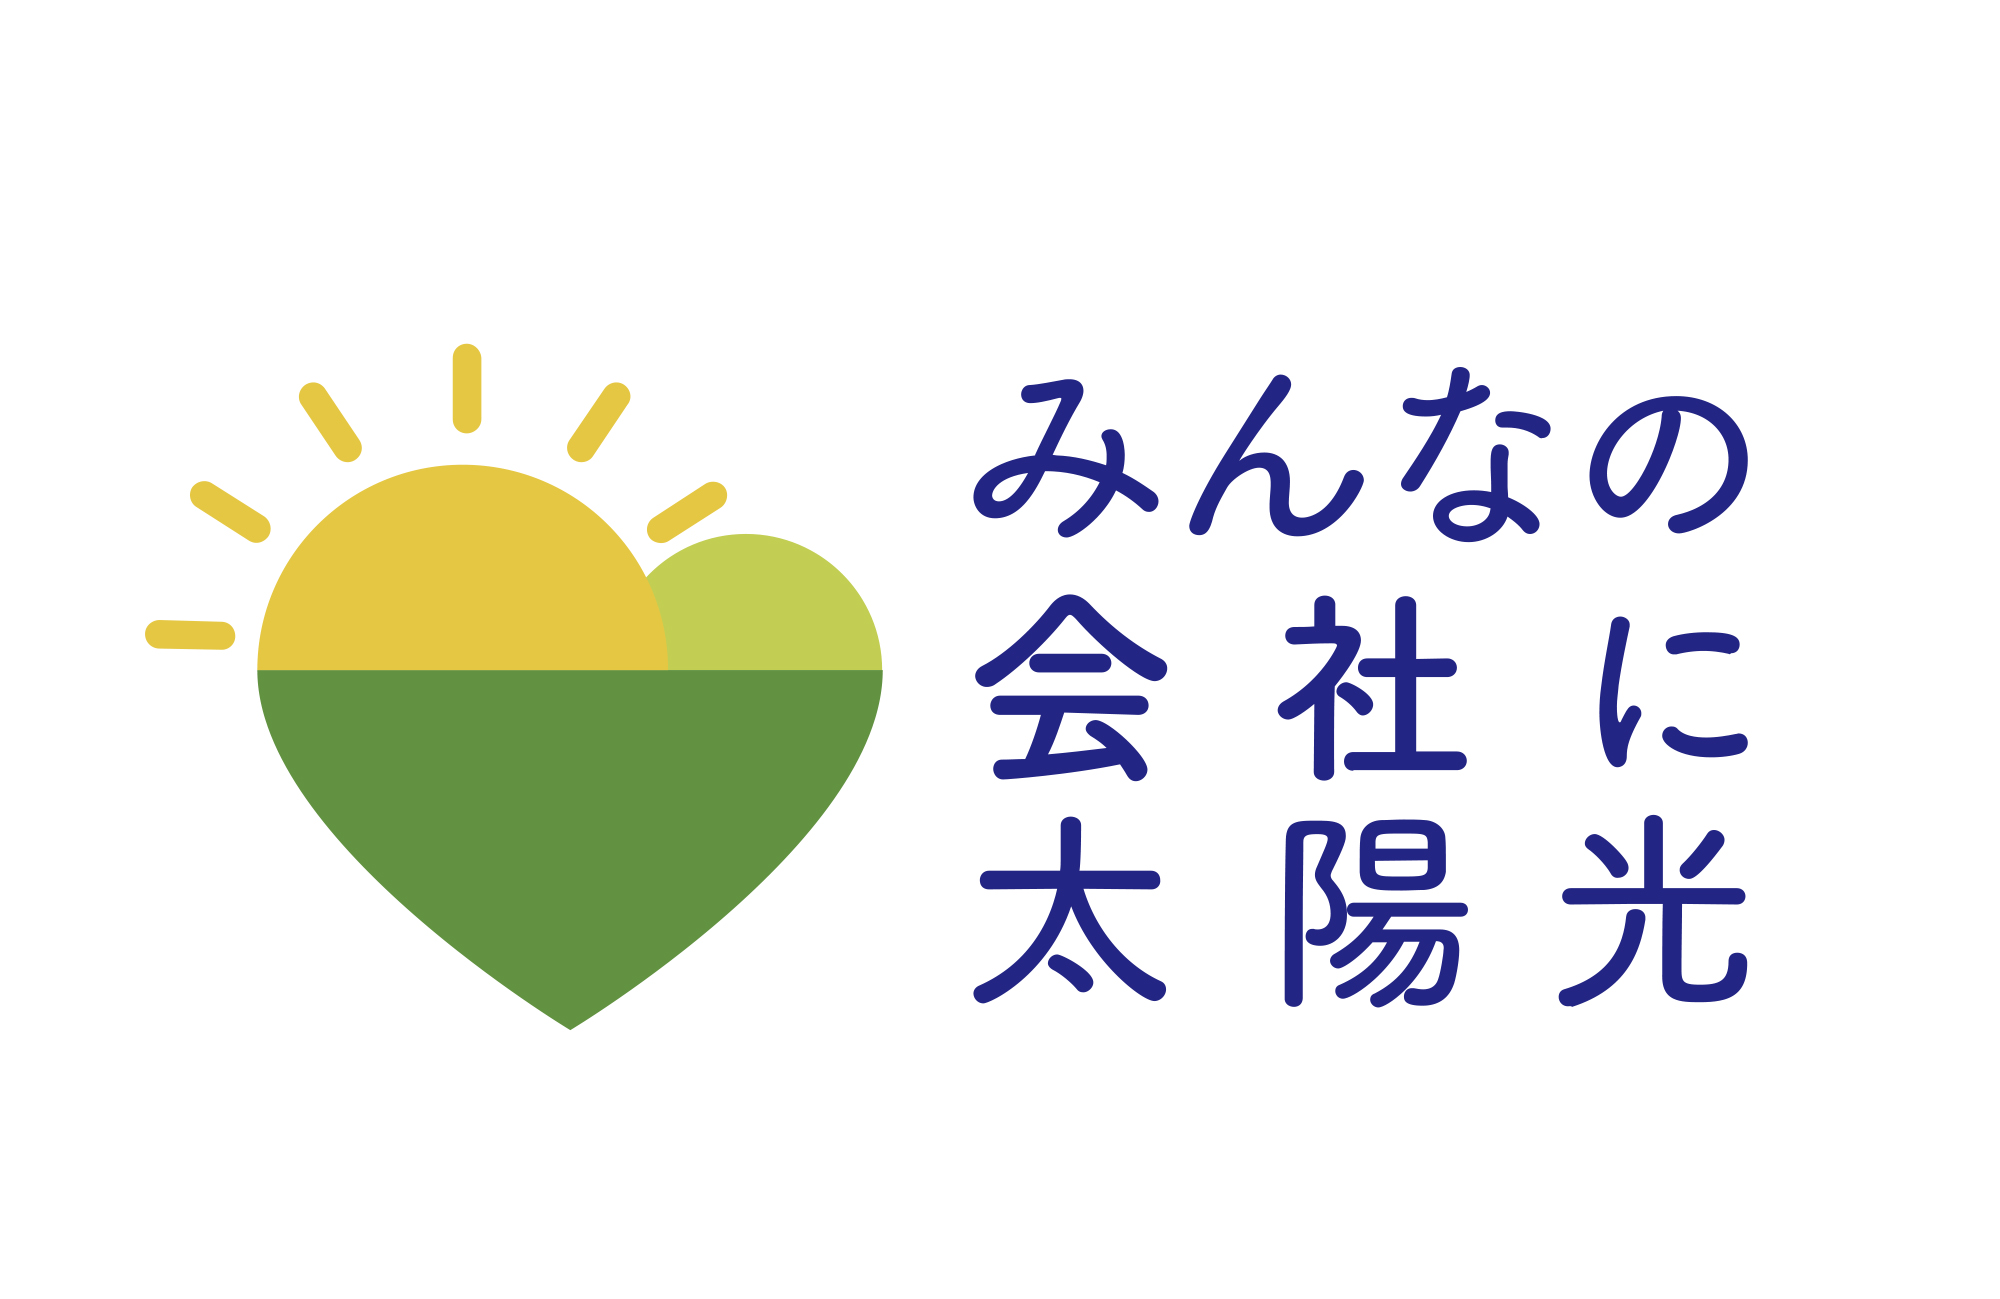 千葉県作成共同購入のロゴを掲載